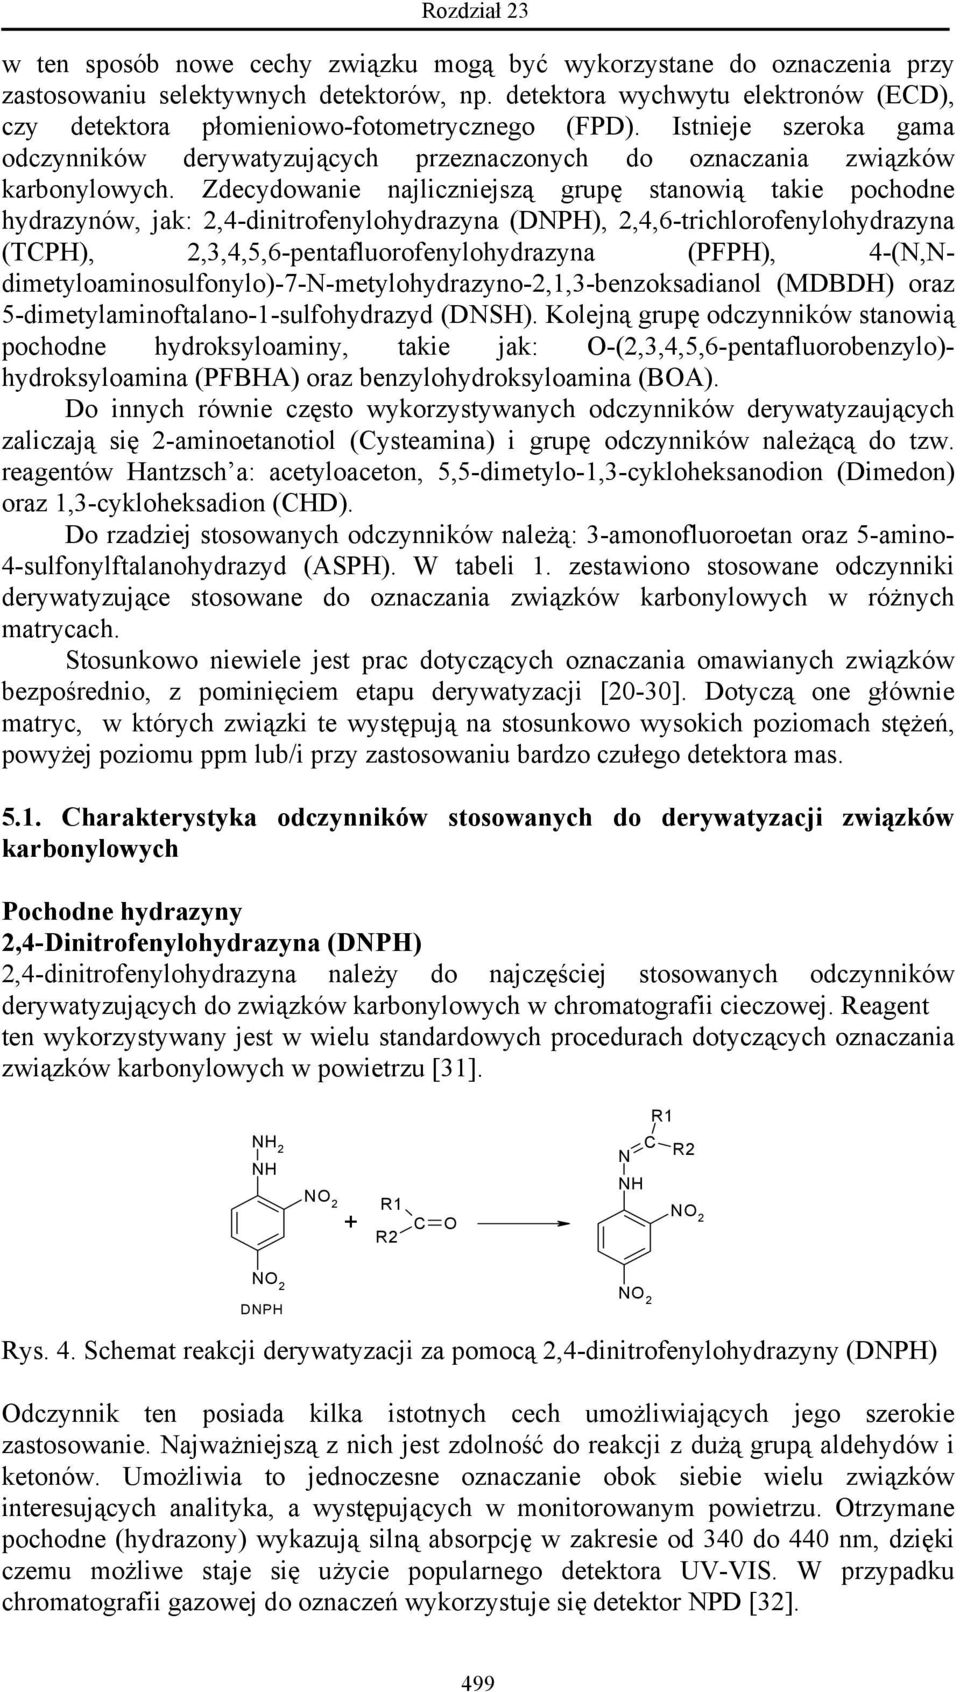 Zdecydowanie najliczniejszą grupę stanowią takie pochodne hydrazynów, jak: 2,4-dinitrofenylohydrazyna (DNPH), 2,4,6-trichlorofenylohydrazyna (TCPH), 2,3,4,5,6-pentafluorofenylohydrazyna (PPH),